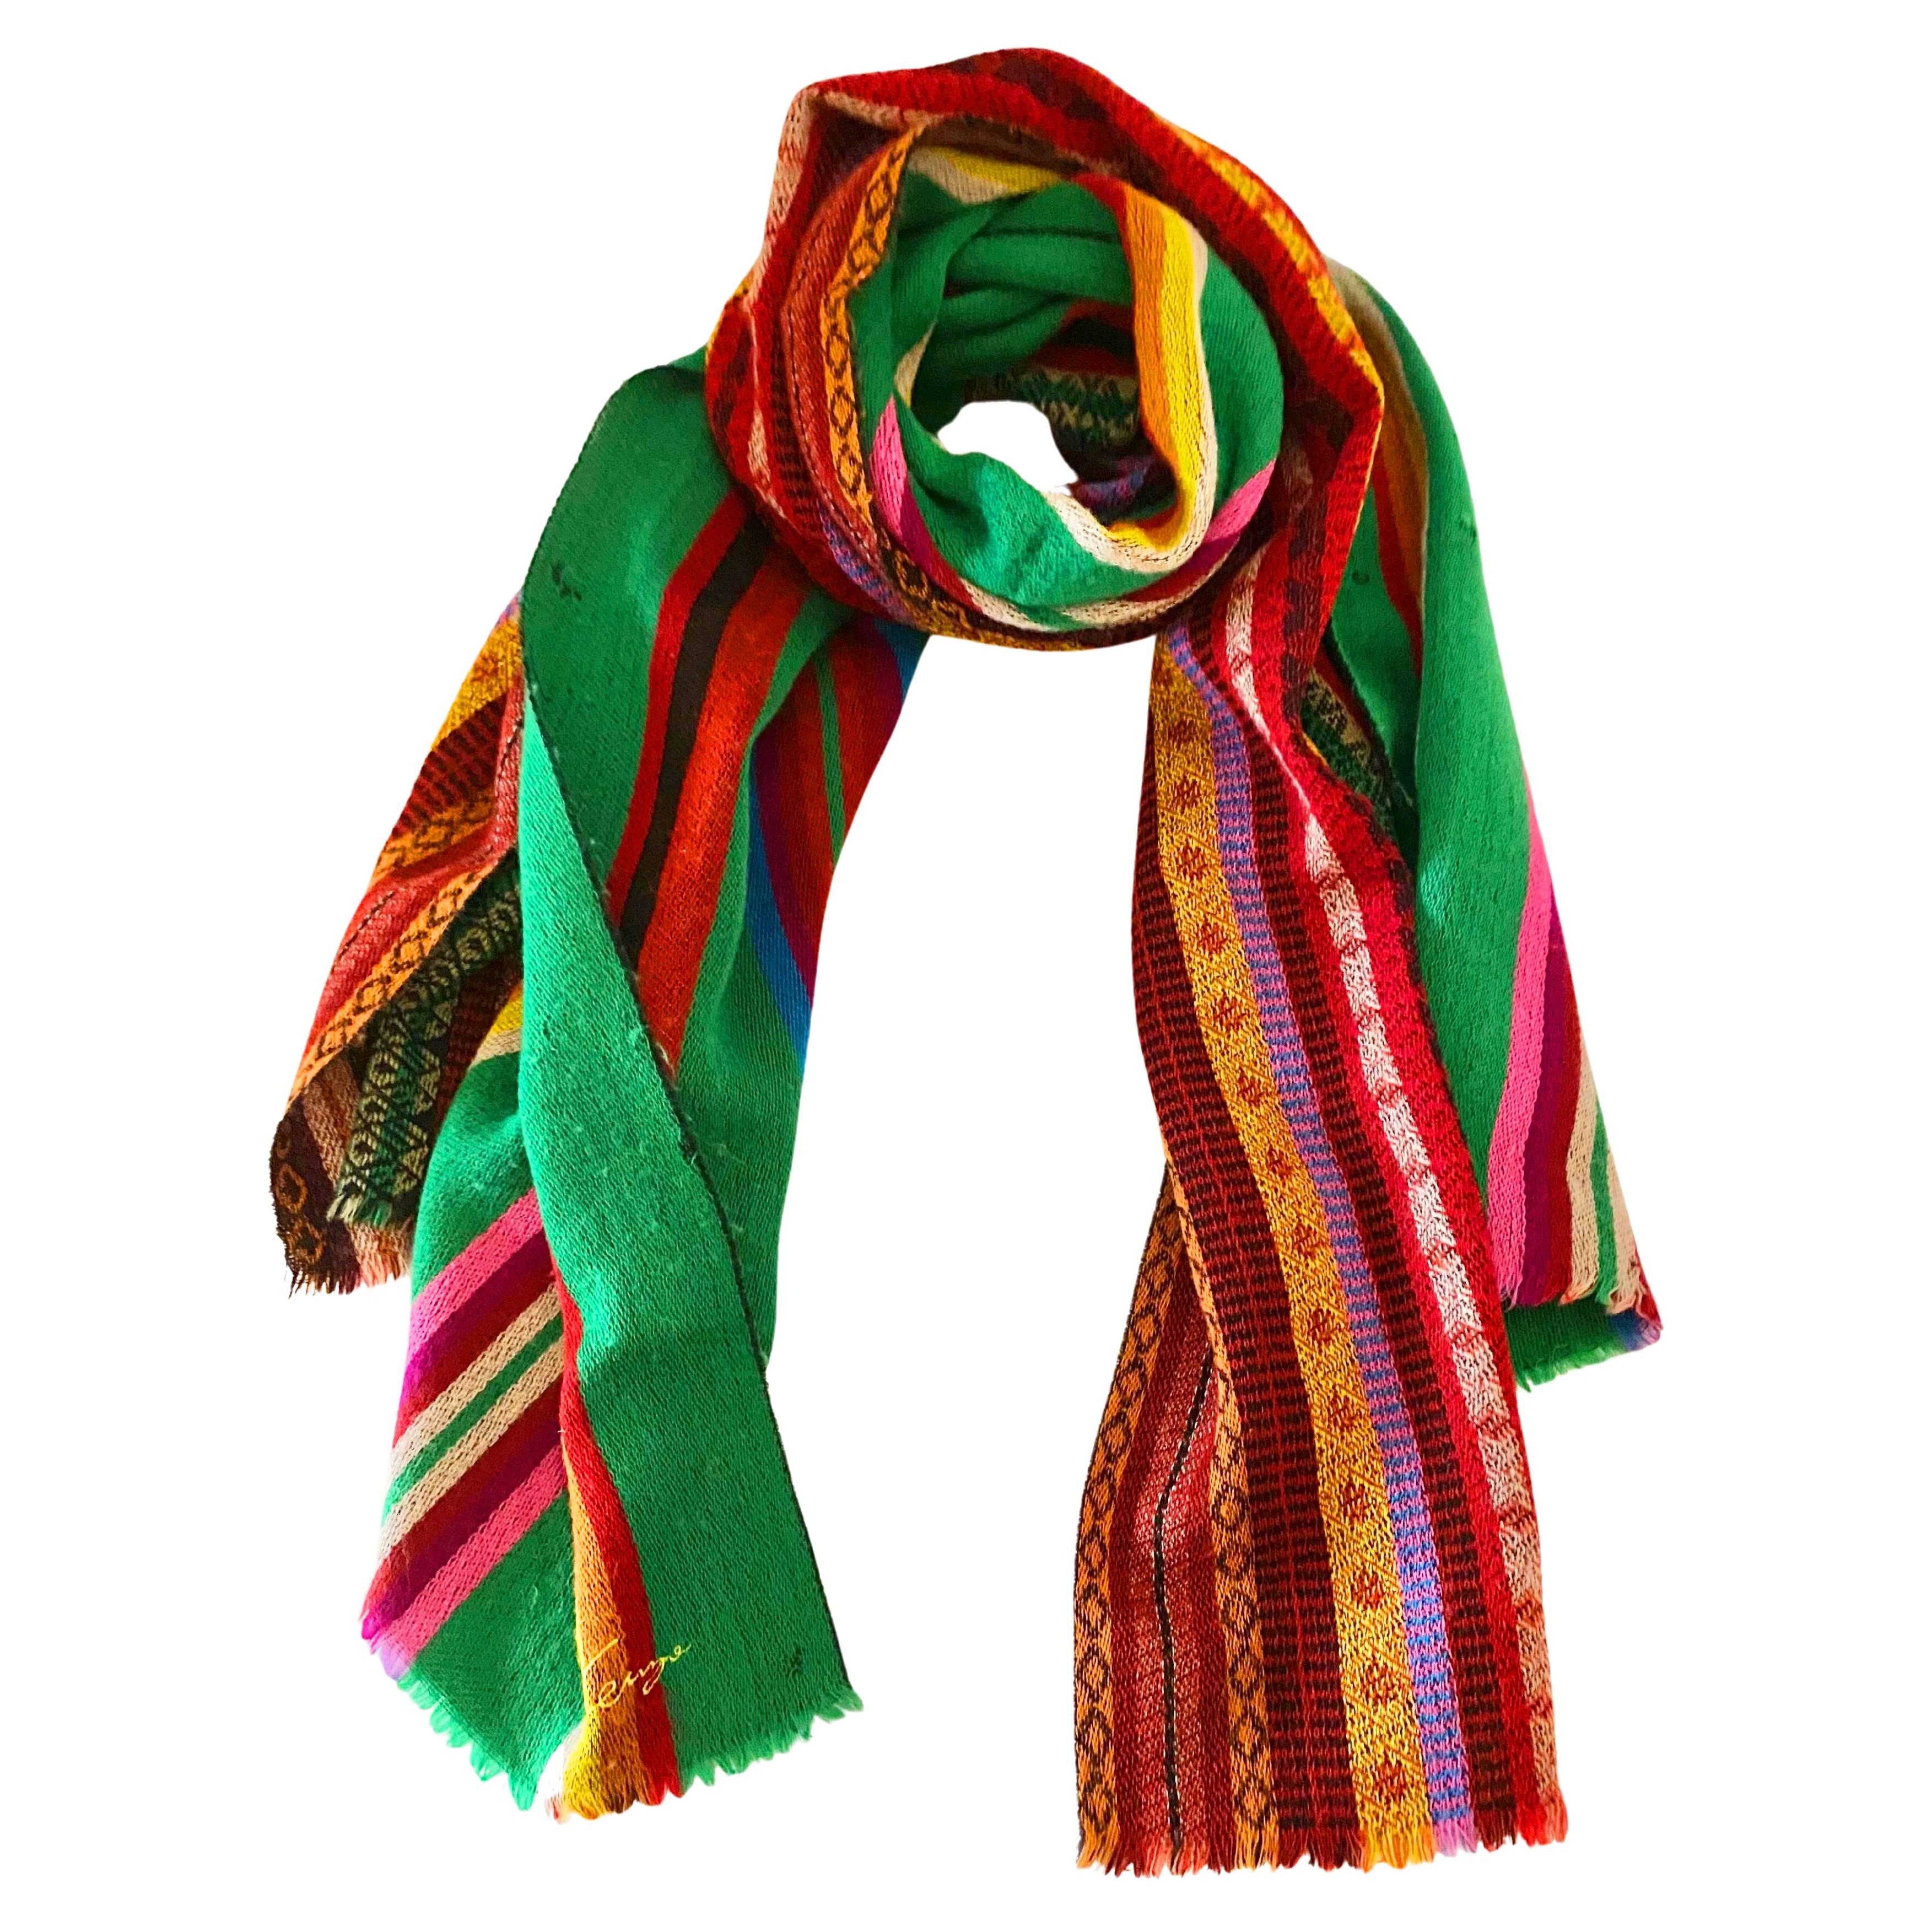 Cette écharpe enveloppante en laine tribale multicolore intemporelle des années 1980 de Kenzo témoigne d'une élégance et d'une sophistication classiques. Dotée d'une rayure subtile et d'un imprimé géométrique, l'écharpe est une merveille de